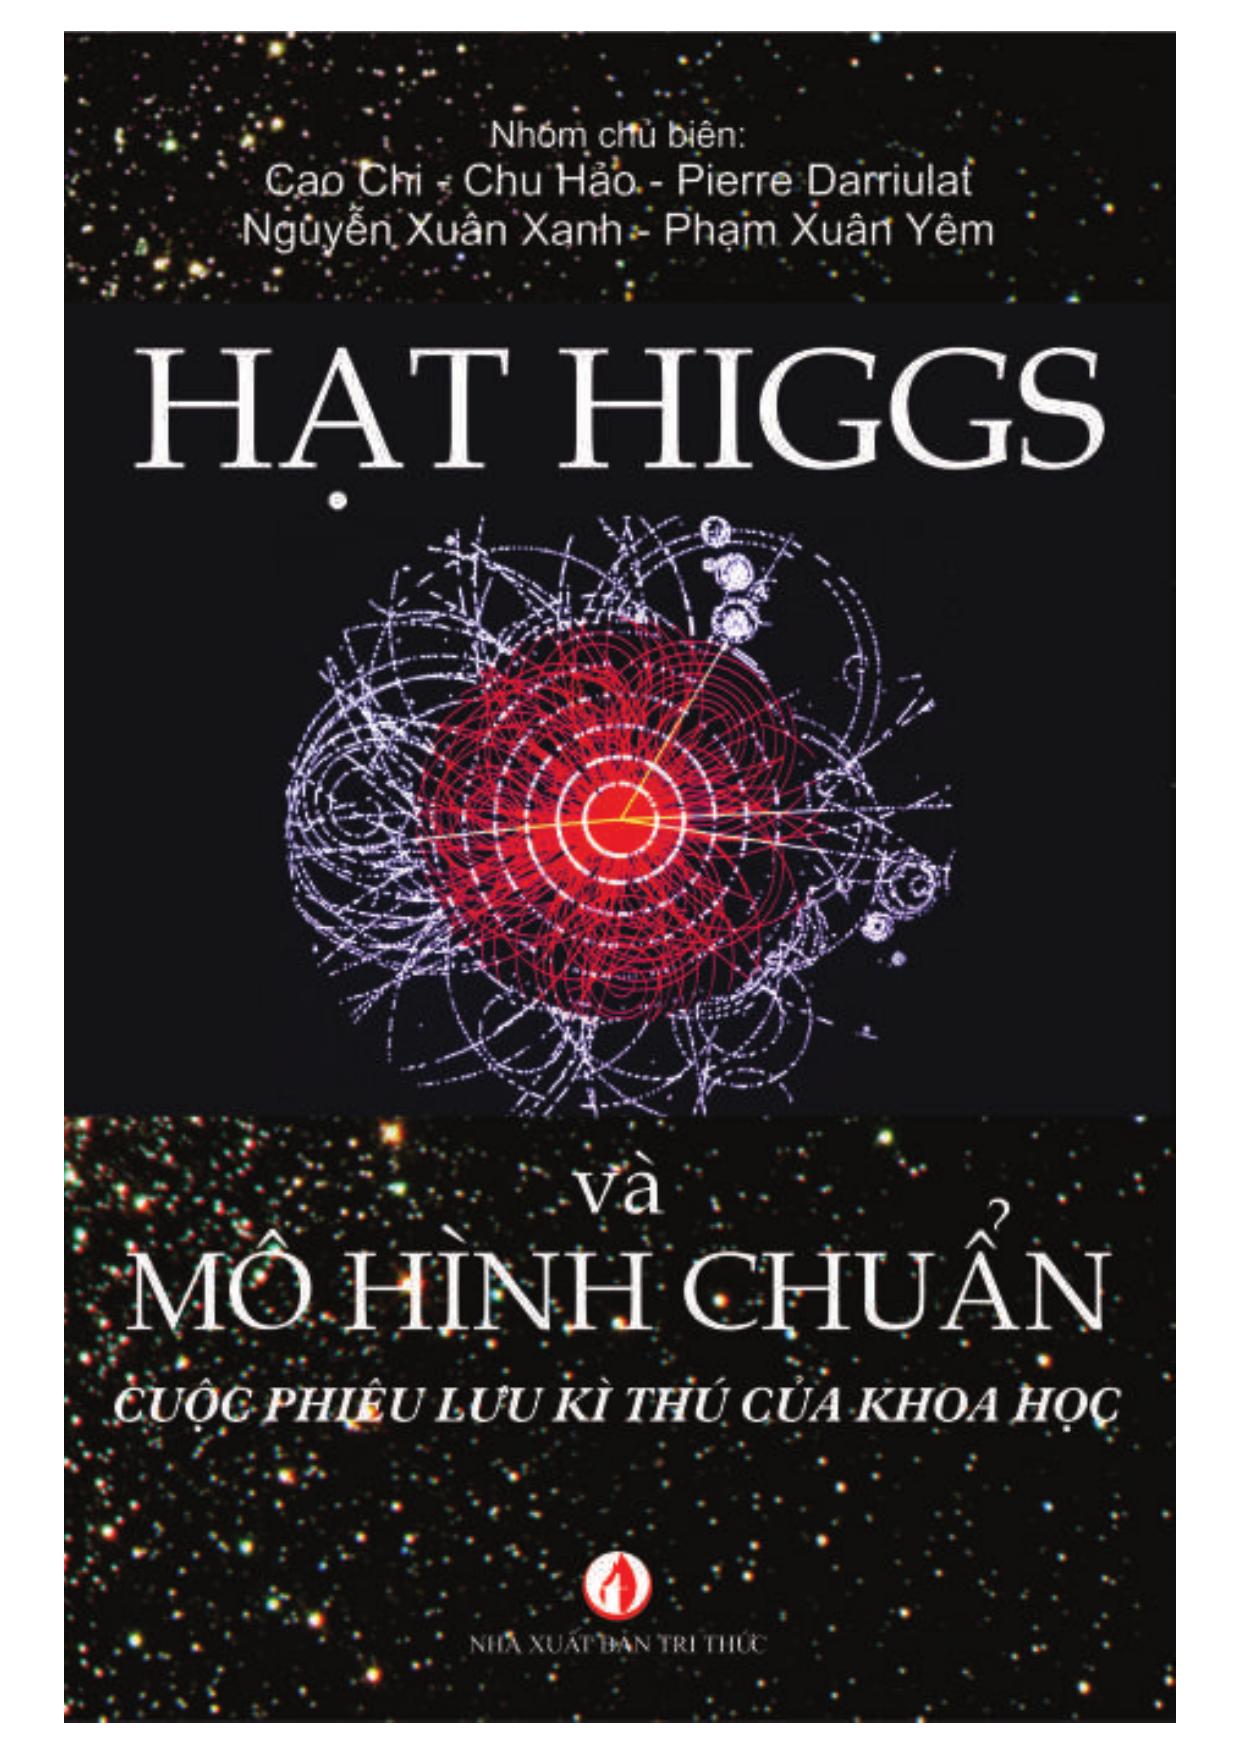 Sách Khai Tâm  Hạt Higgs Và Mô Hình  Chuẩn Cao Chi  Chu Hảo  Pierre  Darriulat  Nguyễn Xuân Xanh  Phạm Xuân Yêm